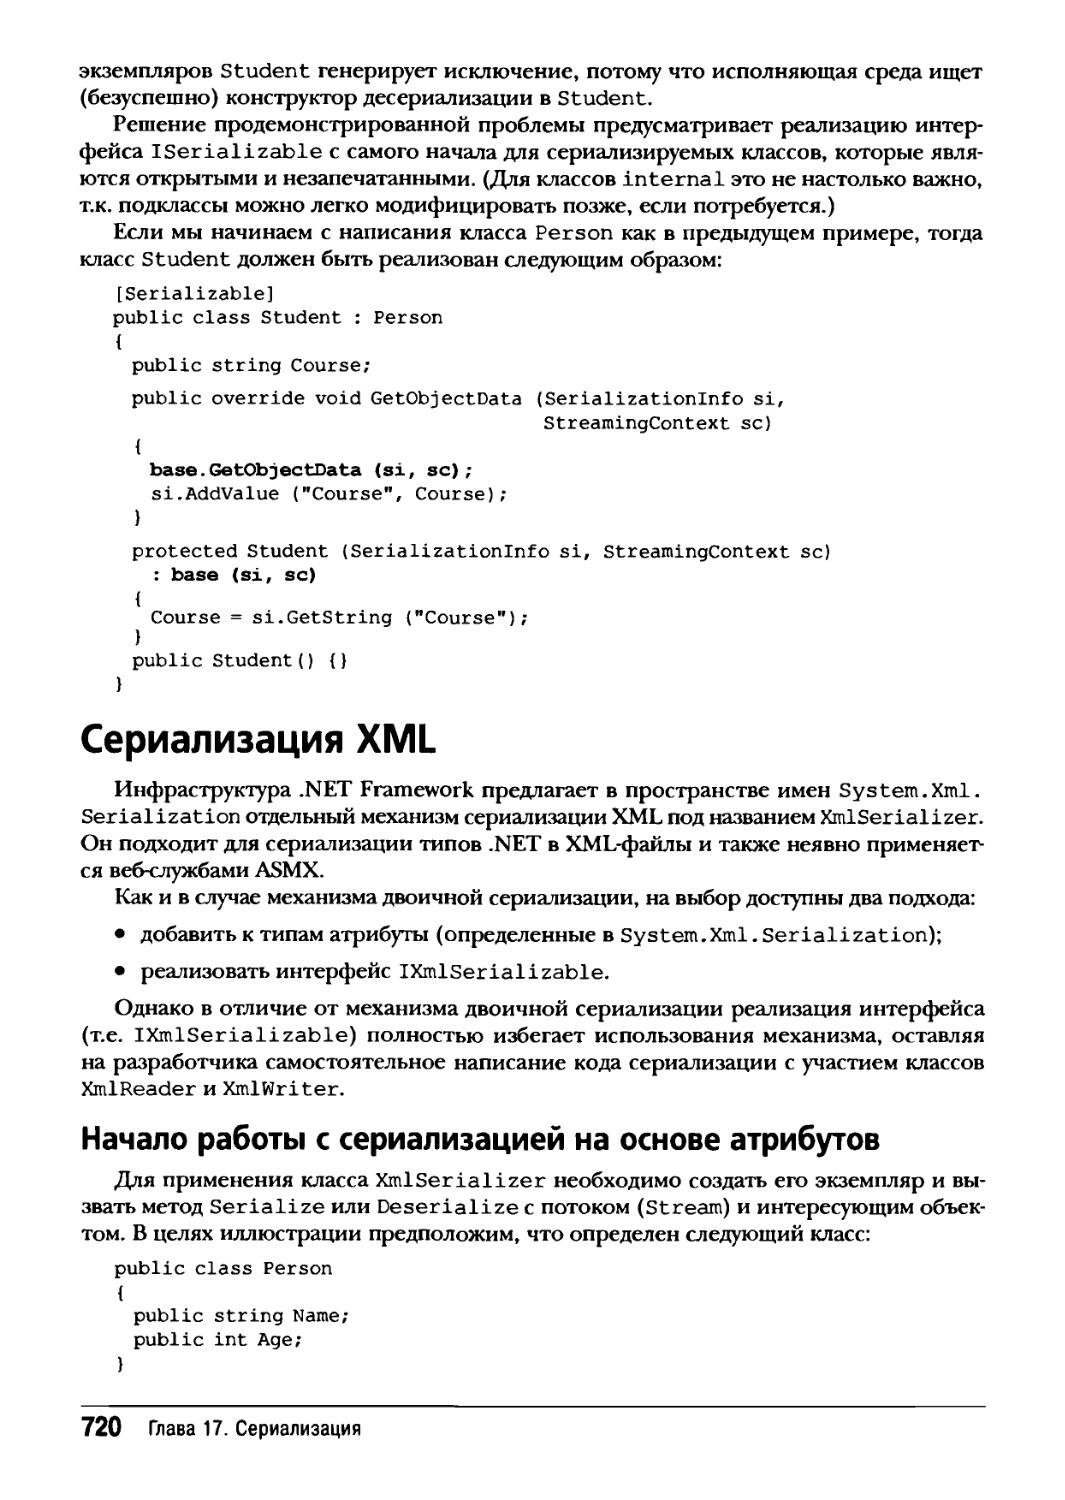 Сериализация XML